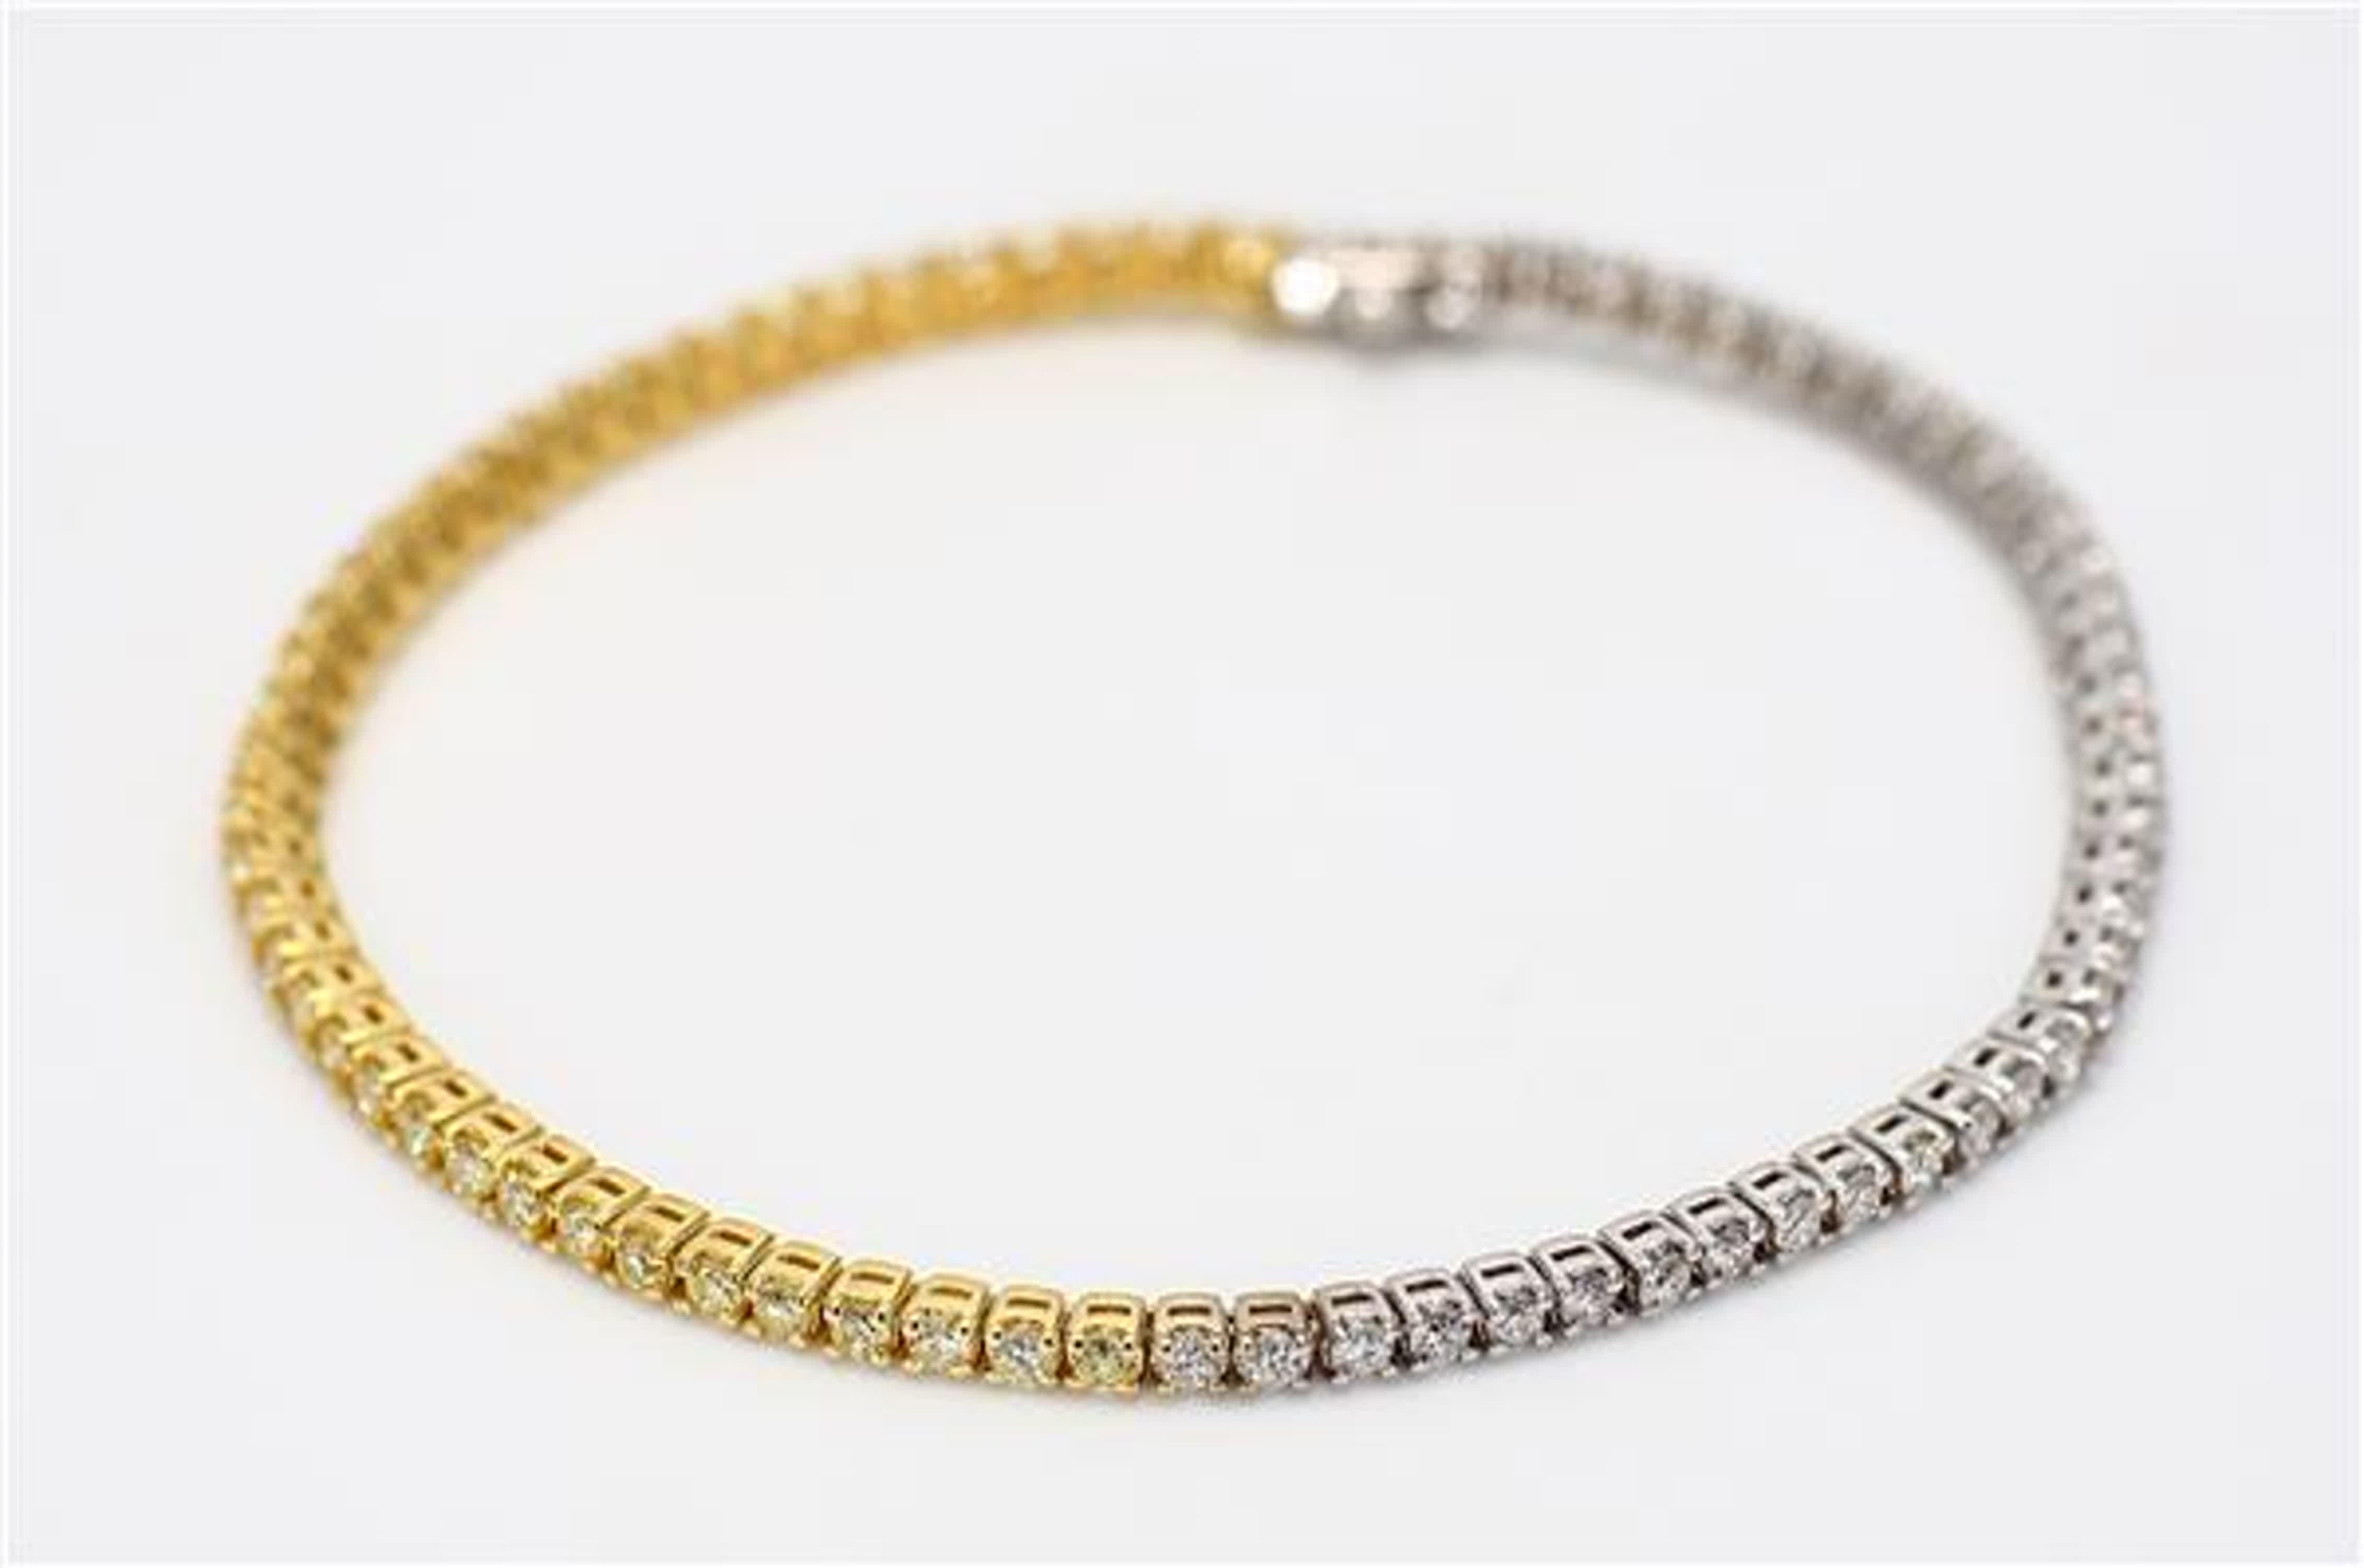 Le bracelet classique en diamants de Raregemworld. Monté dans une belle monture en or jaune et blanc 18 carats avec une mêlée de diamants jaunes de taille ronde naturelle complétée par une mêlée de diamants blancs de taille ronde naturelle. Ce